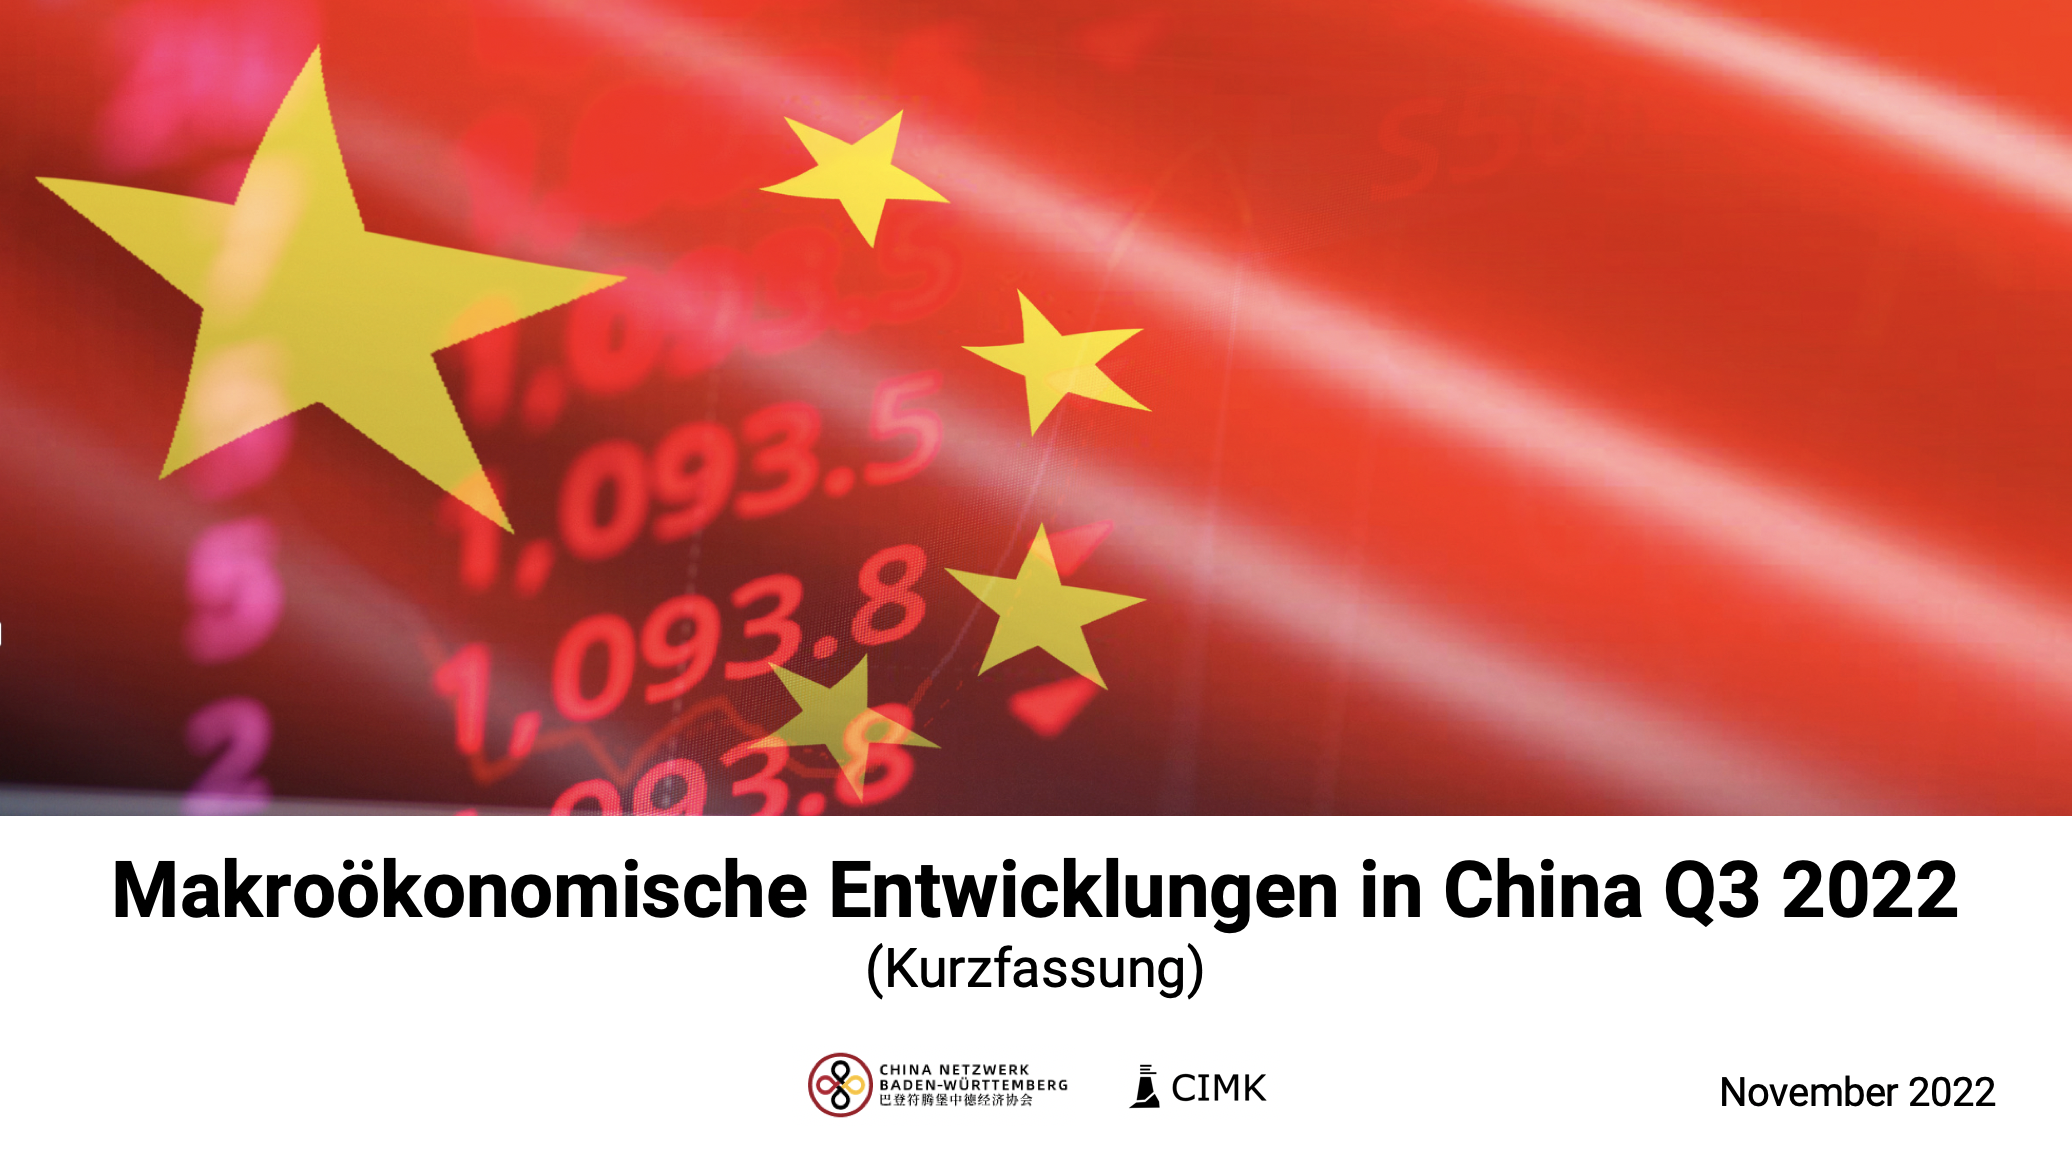 Cimk Makroökonomische Entwicklungen China Q3 2022